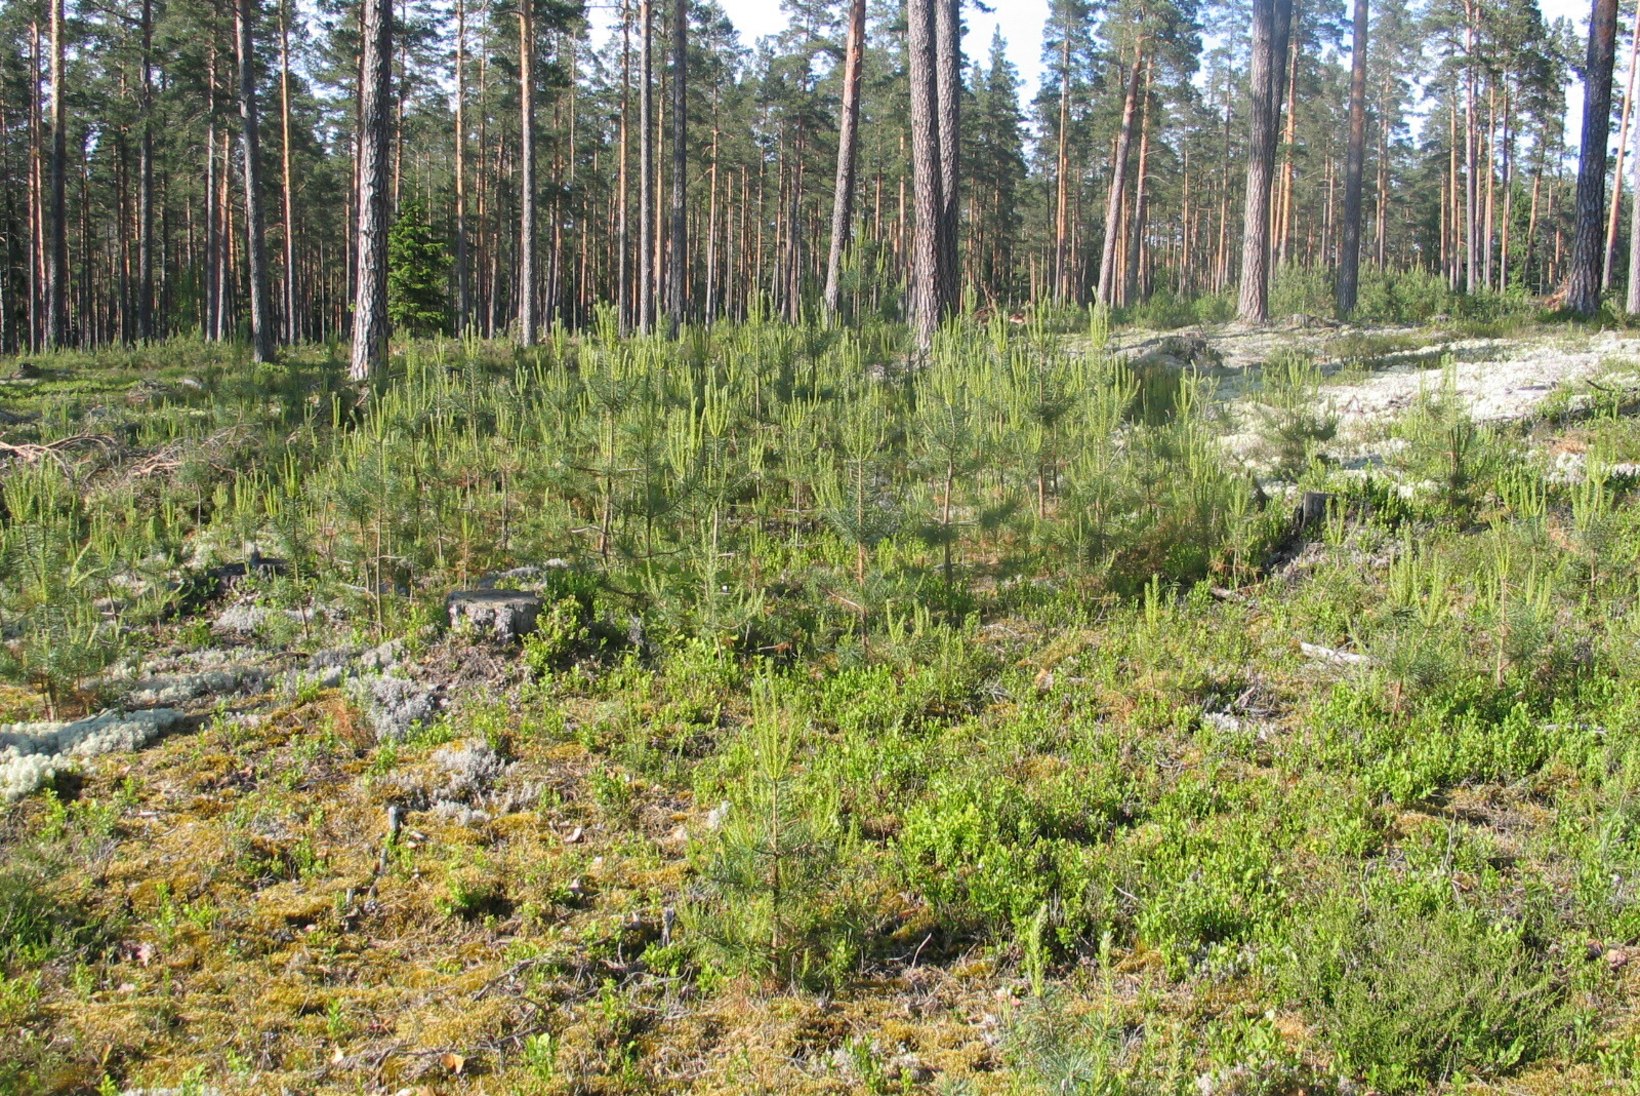 Metsa järgulise majandamise ja jätkukasvatuse raietest Soome näitel 